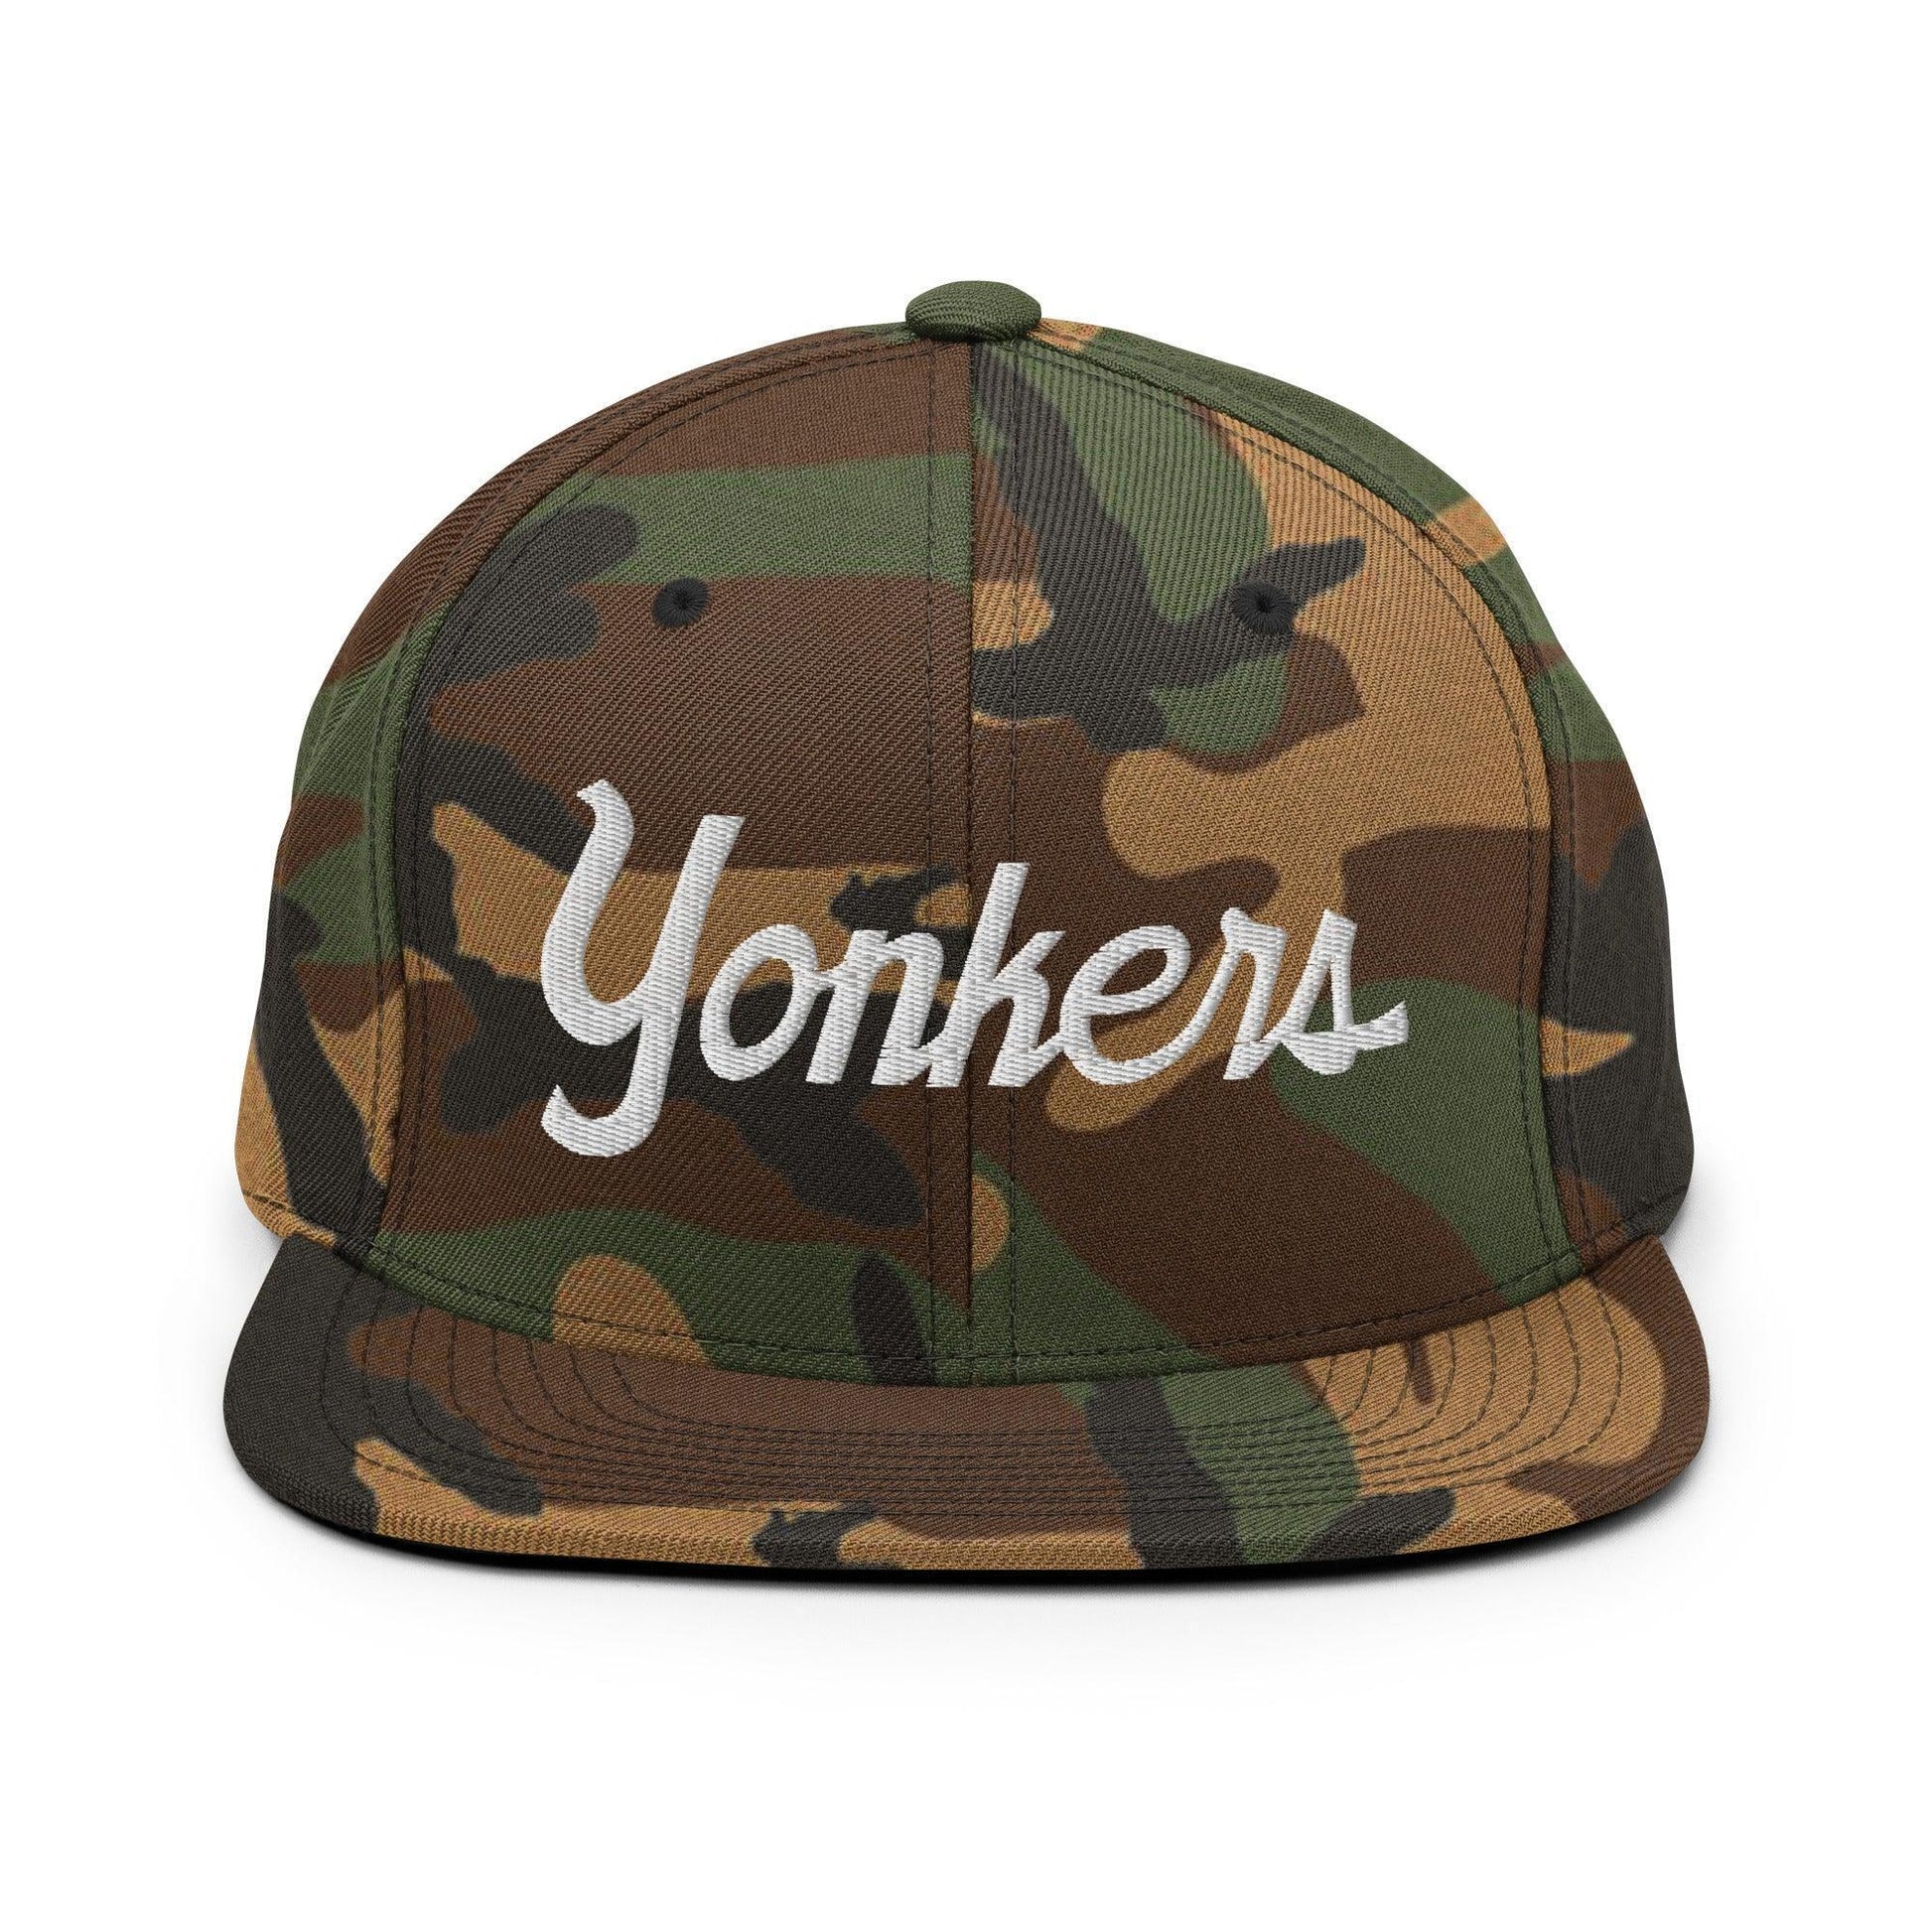 Yonkers Script Snapback Hat Green Camo